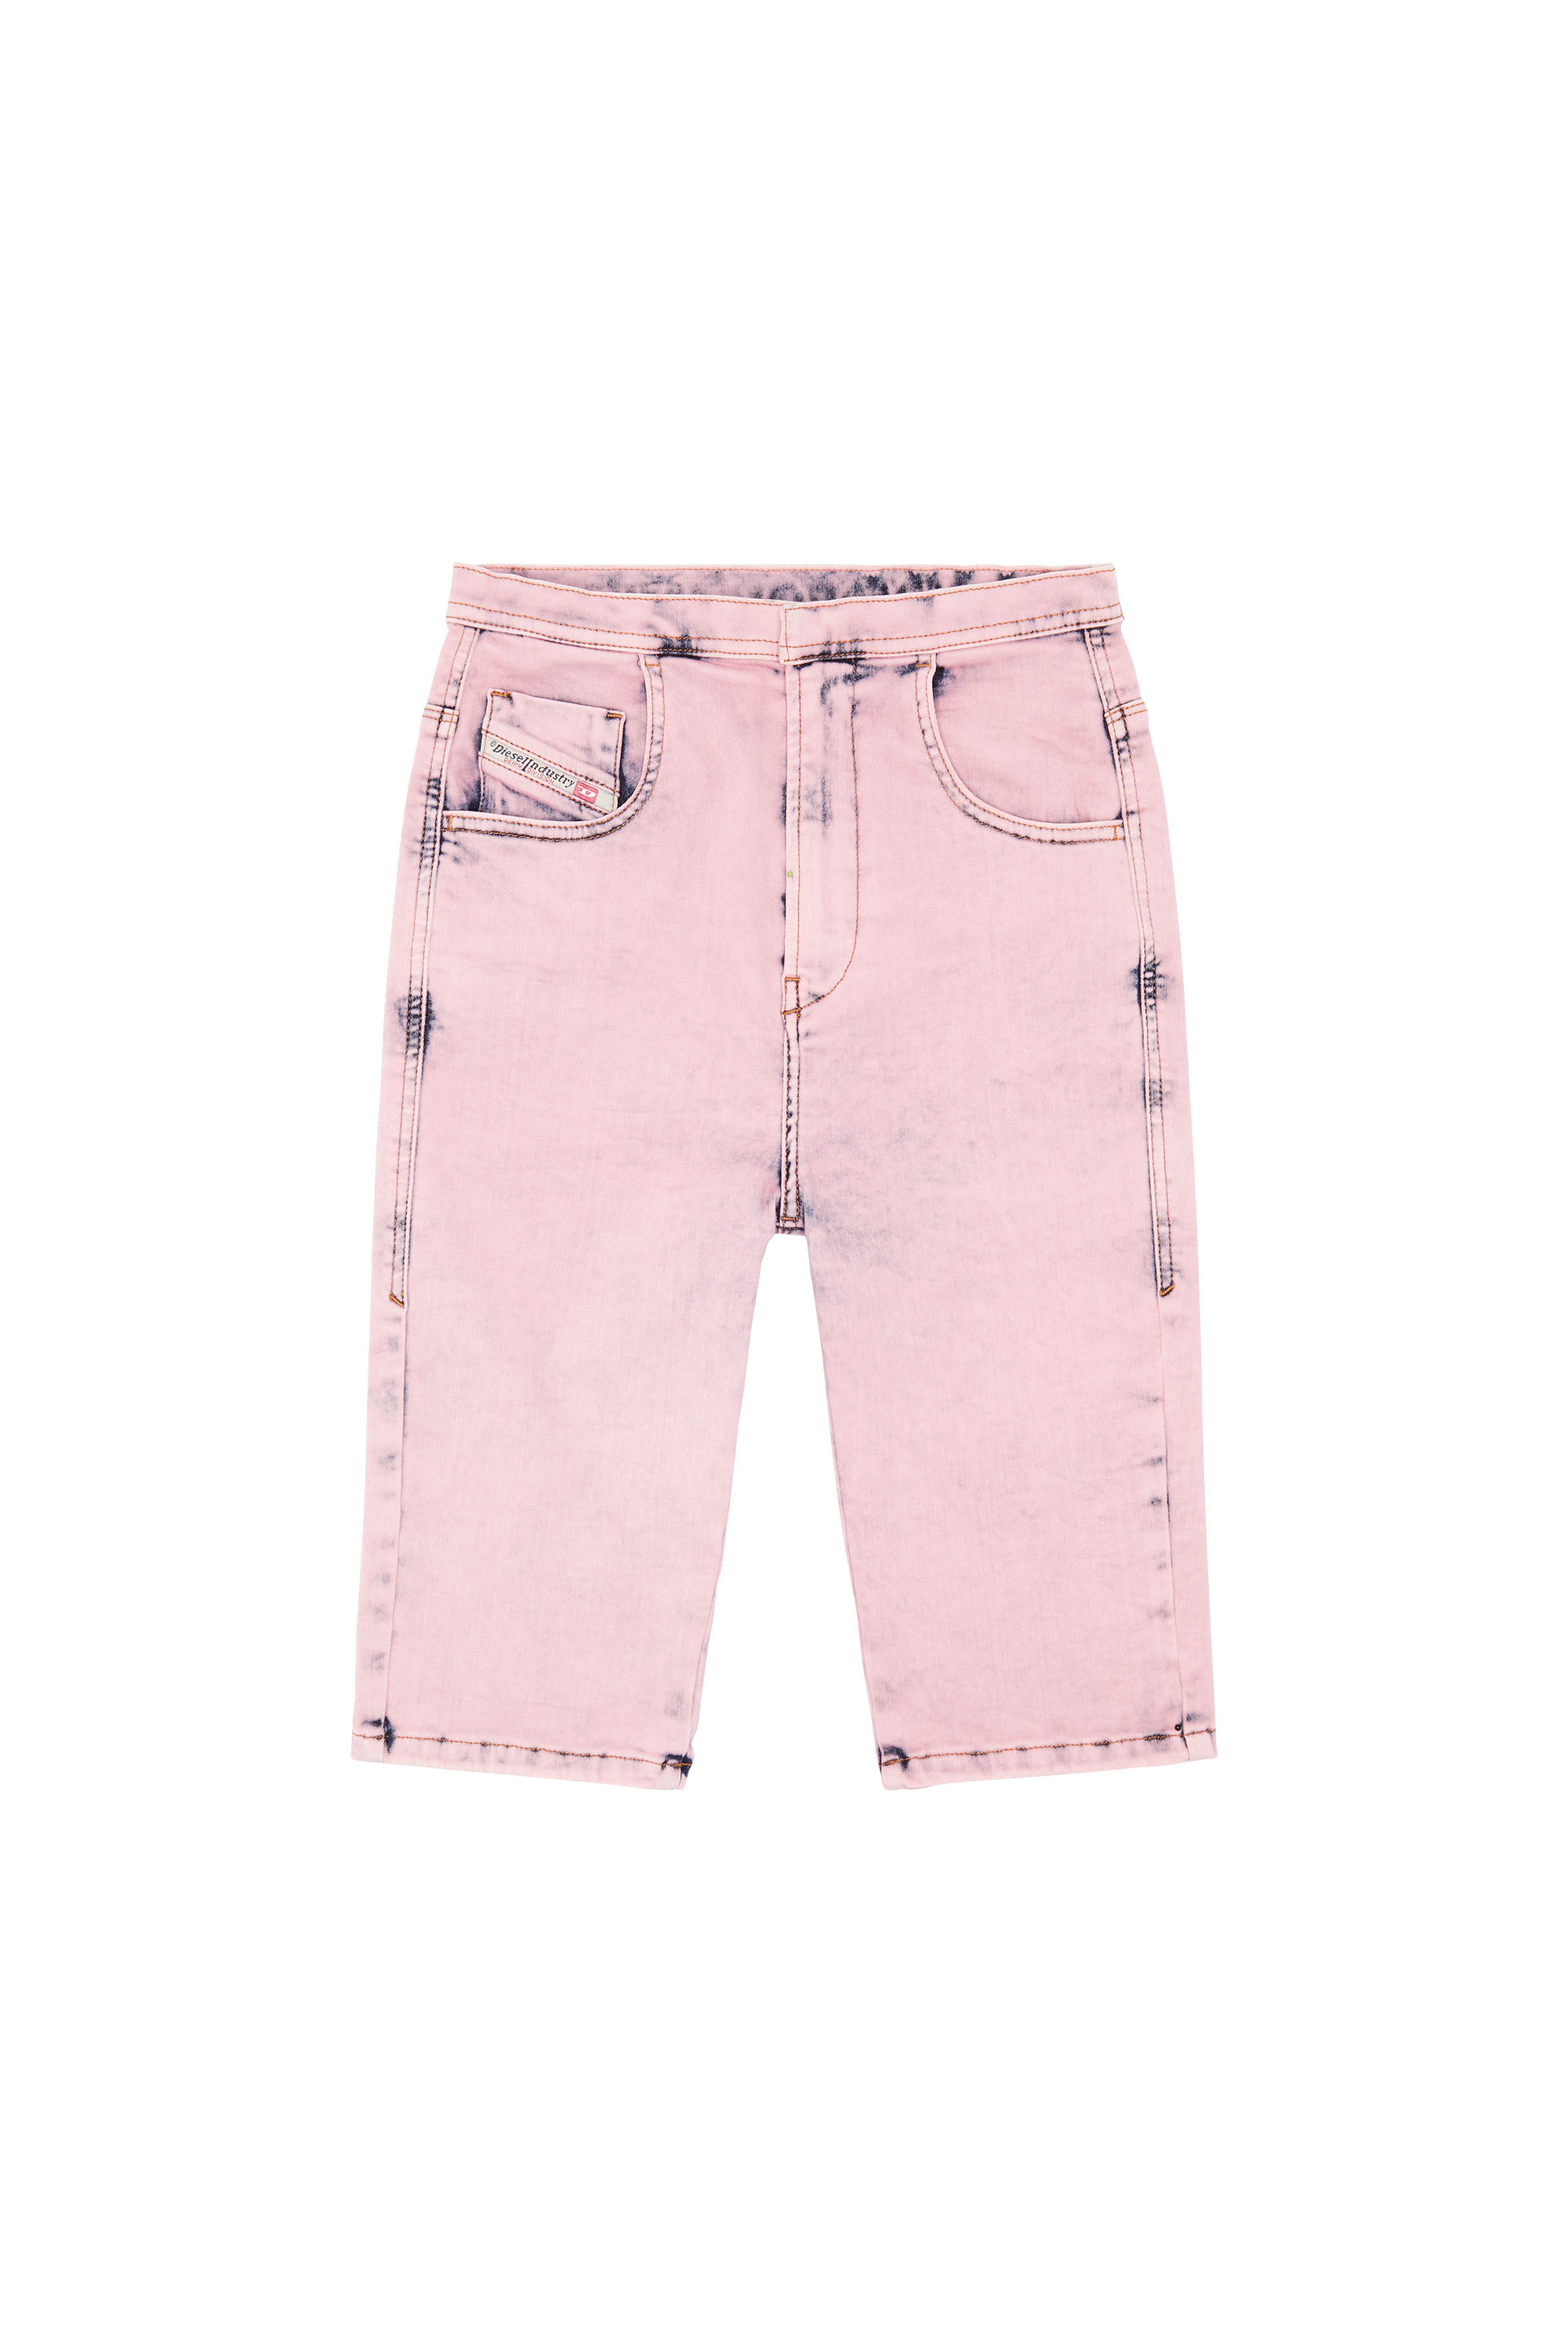 DE-FENSIVE-FS, Pink - Shorts